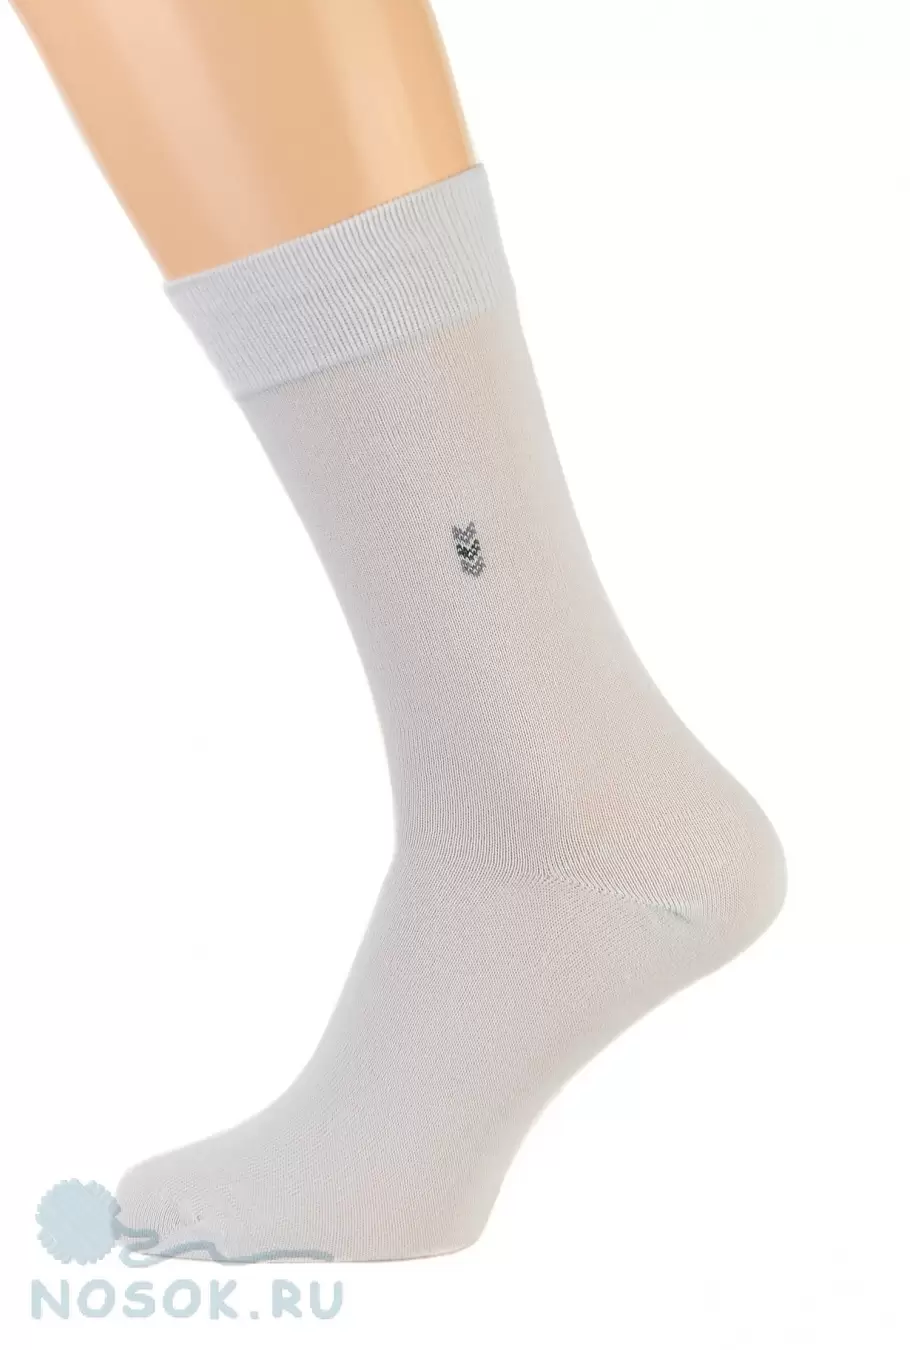 Pingons 8A3, мужские носки (изображение 1)